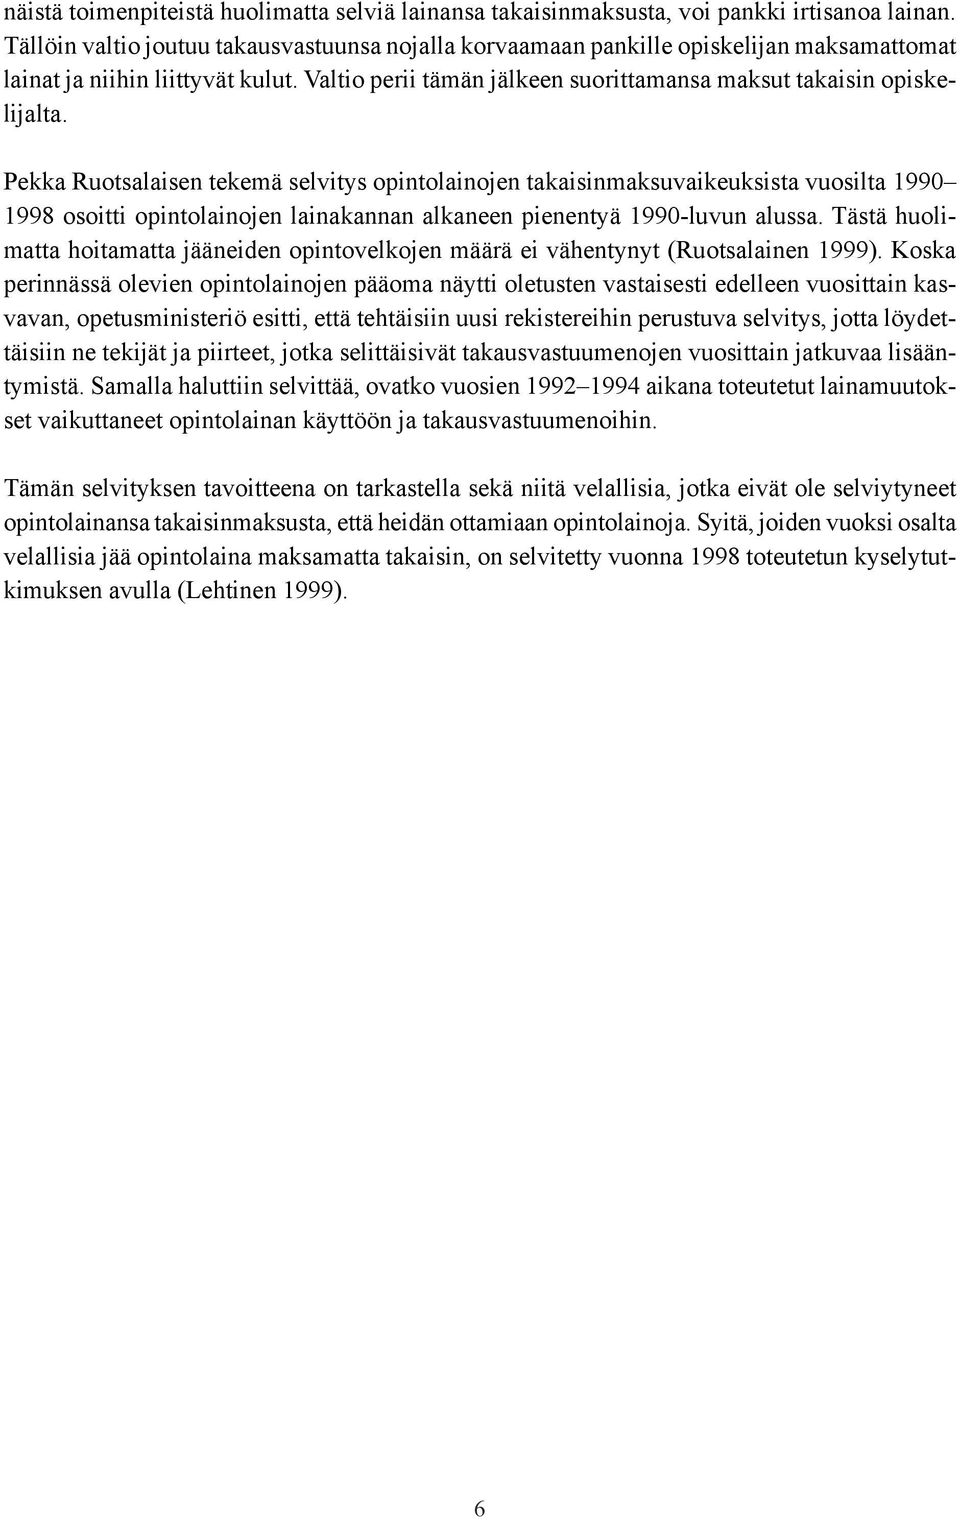 Pekka Ruotsalaisen tekemä selvitys opintolainojen takaisinmaksuvaikeuksista vuosilta 1990 1998 osoitti opintolainojen lainakannan alkaneen pienentyä 1990-luvun alussa.